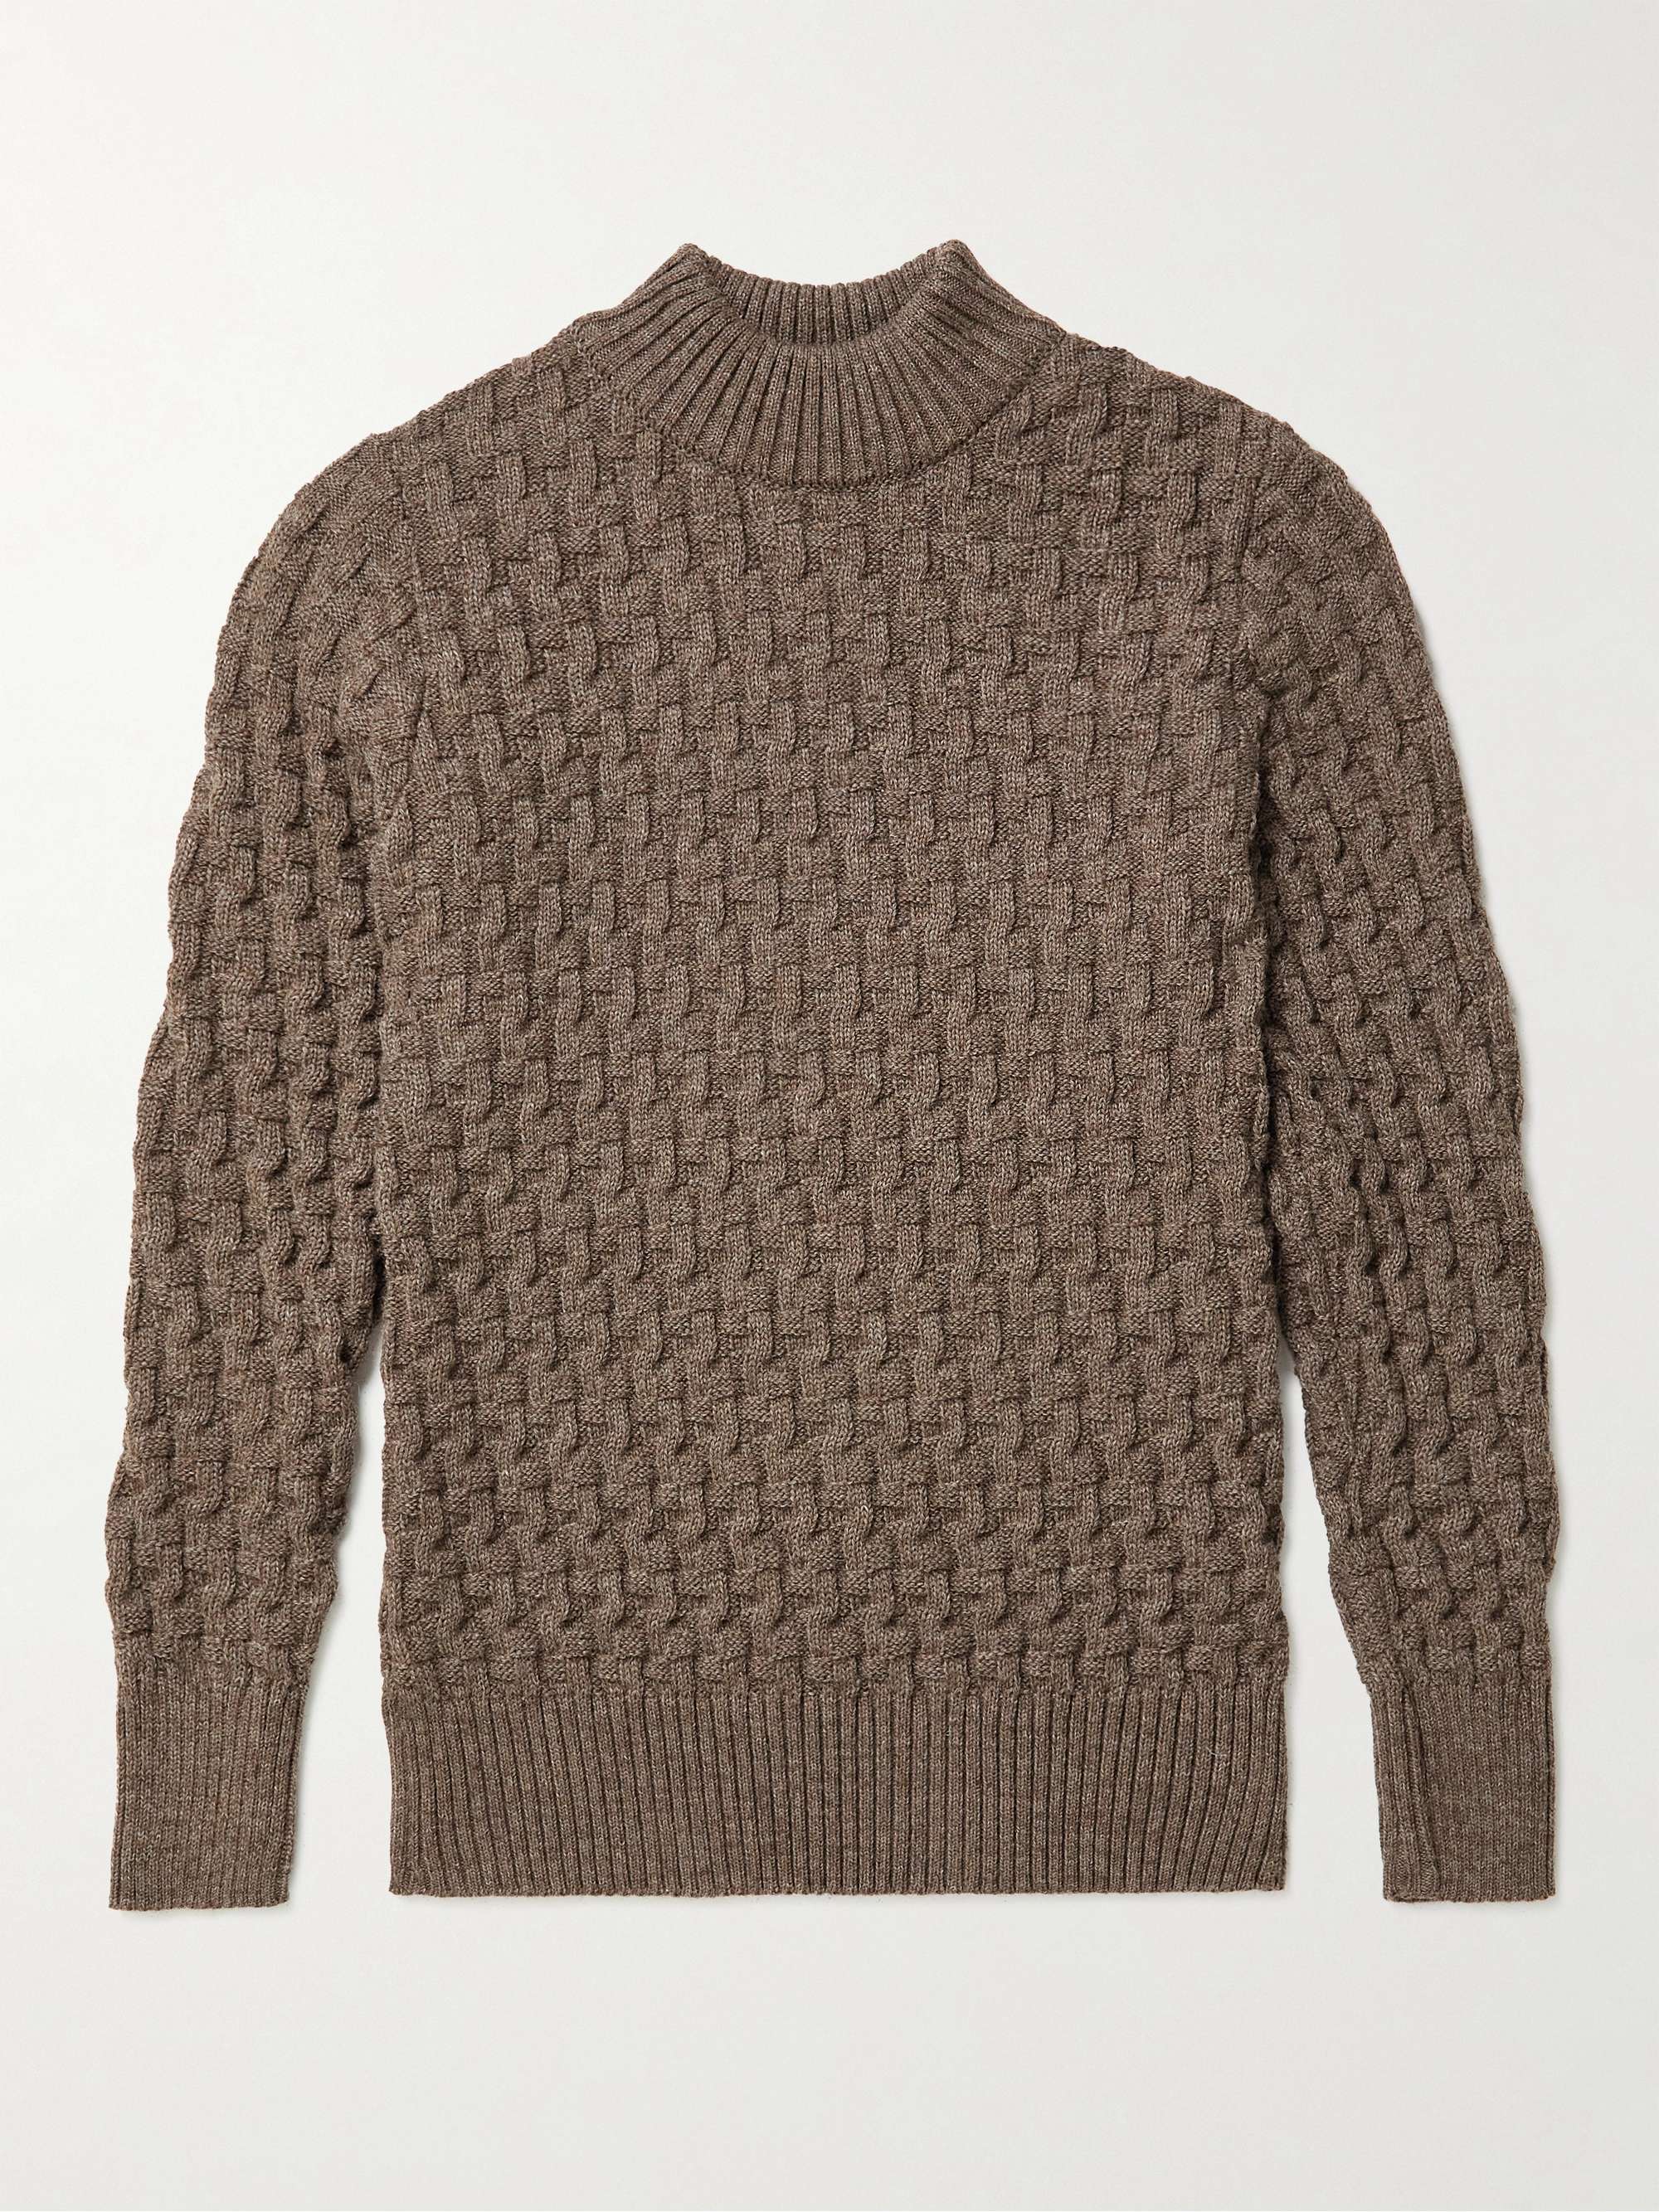 Brown Stark Slim-Fit Virgin Wool Sweater | S.N.S. HERNING | MR PORTER